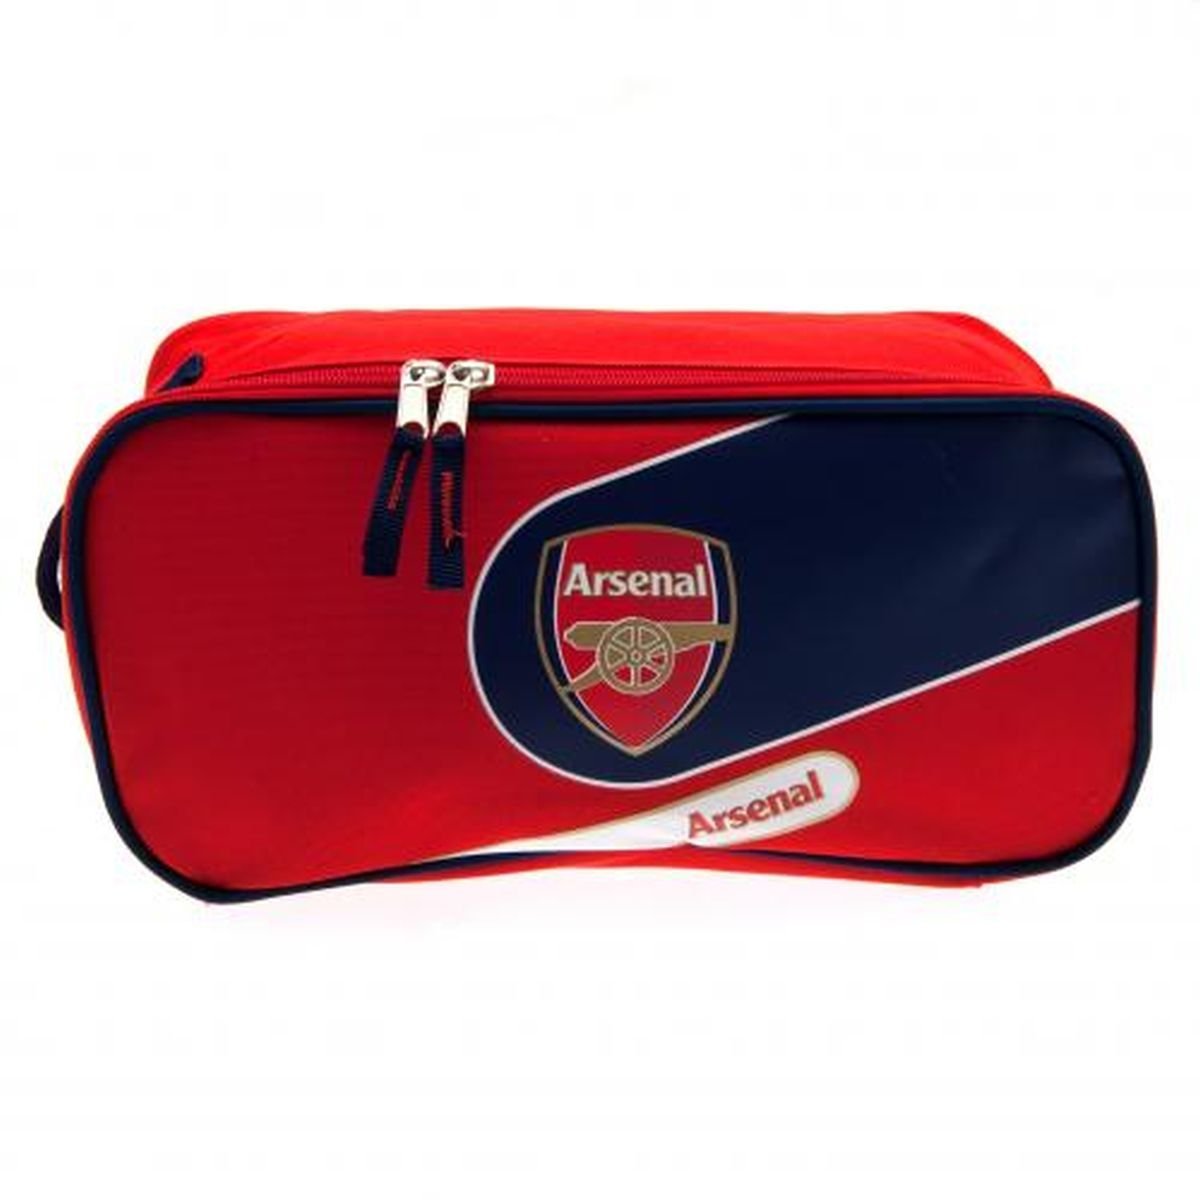 Arsenal FC กระเป๋ารองเท้า อาร์เซน่อล